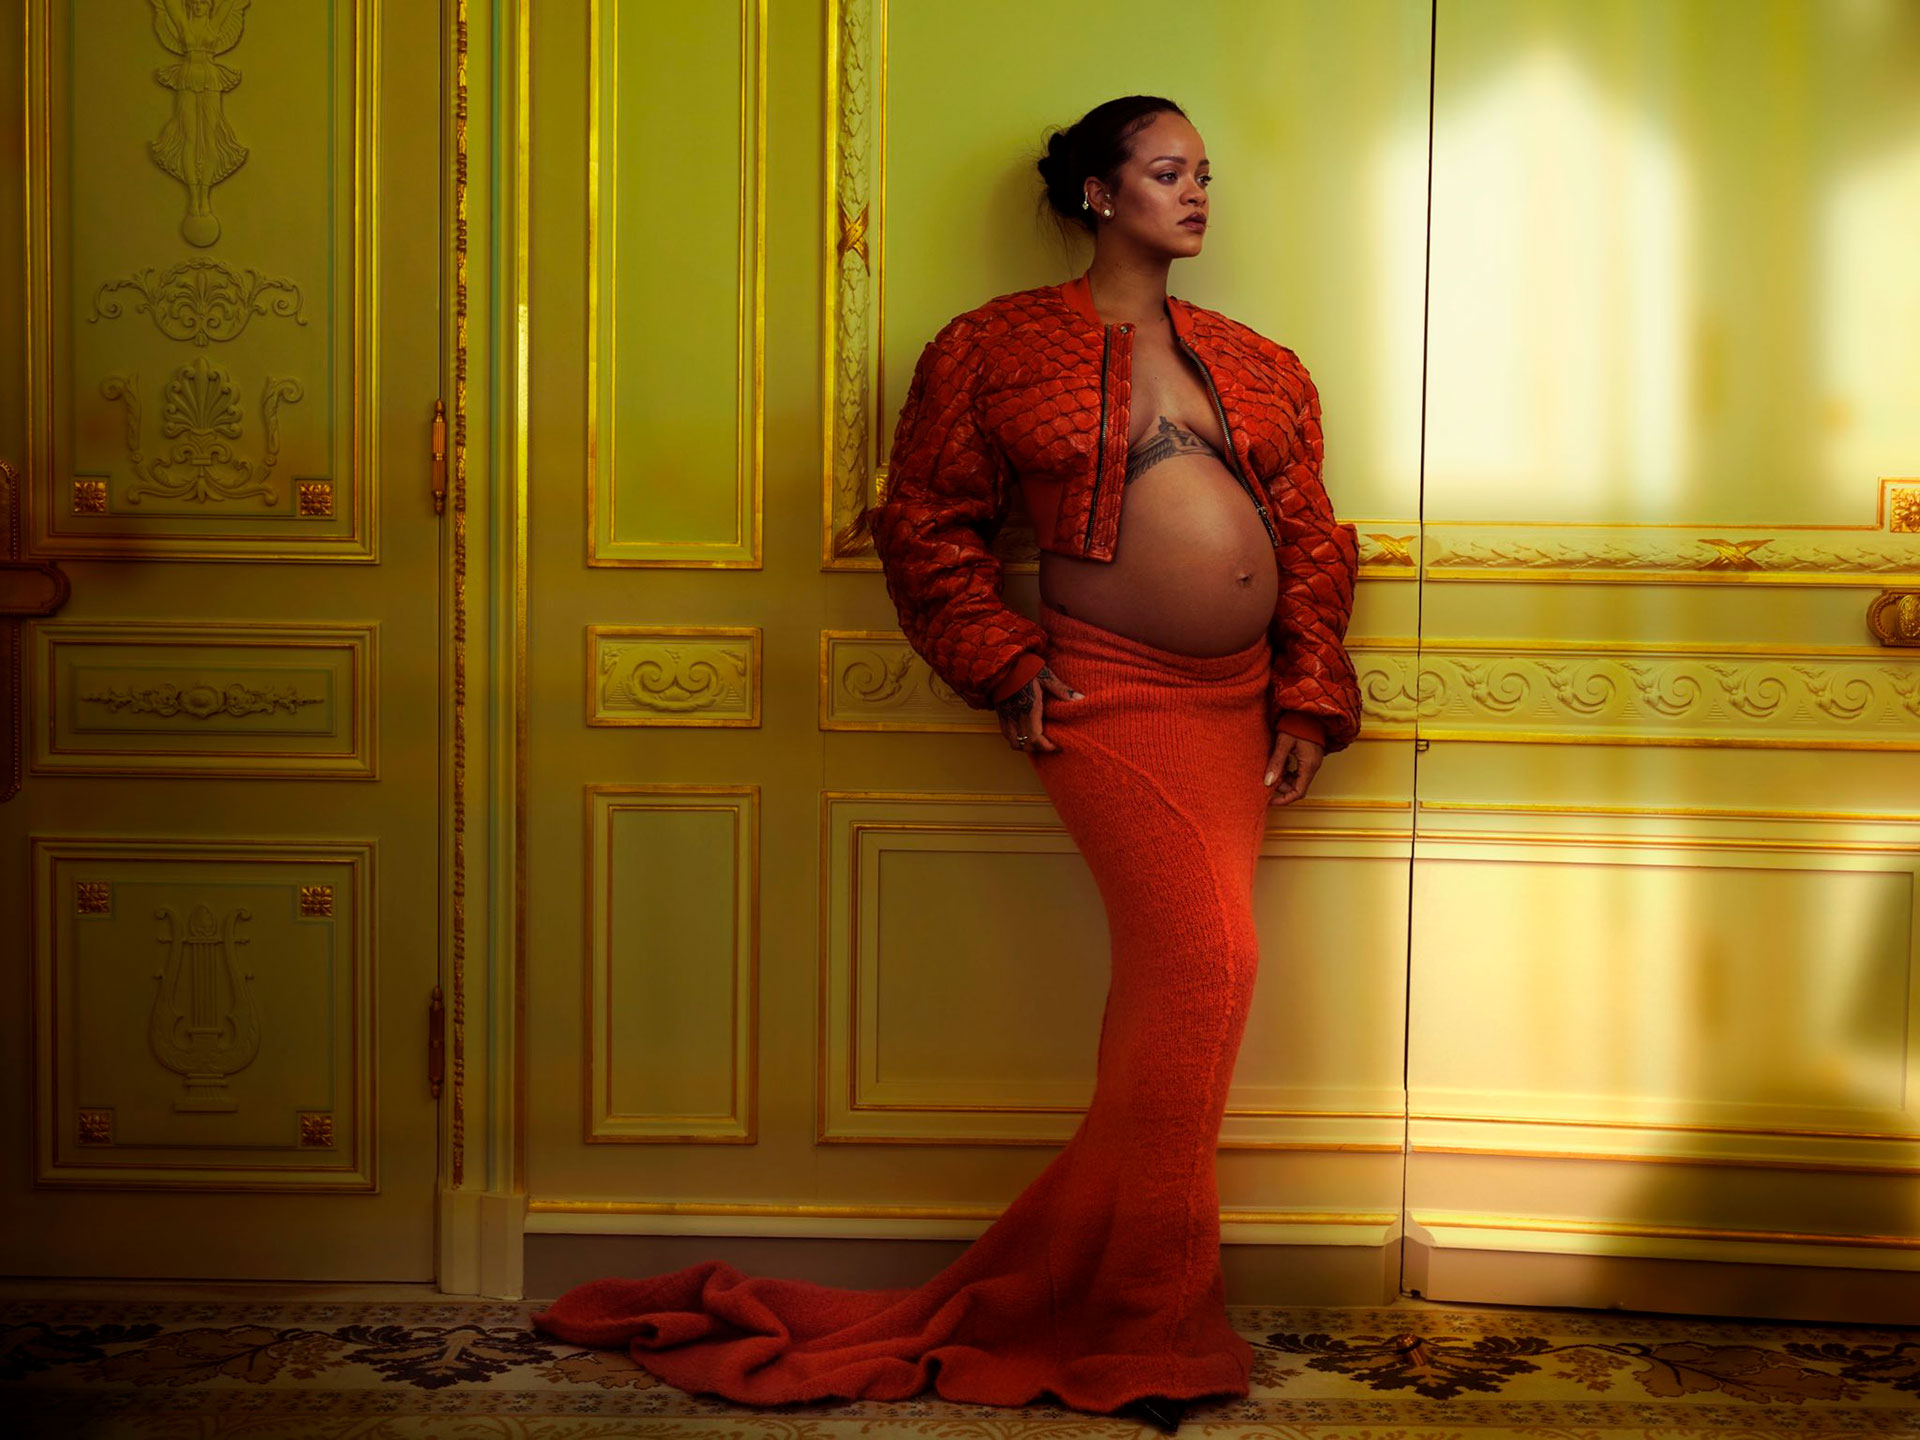 Tendencias: Rihanna luce radiante en fotos de Revista Vogue